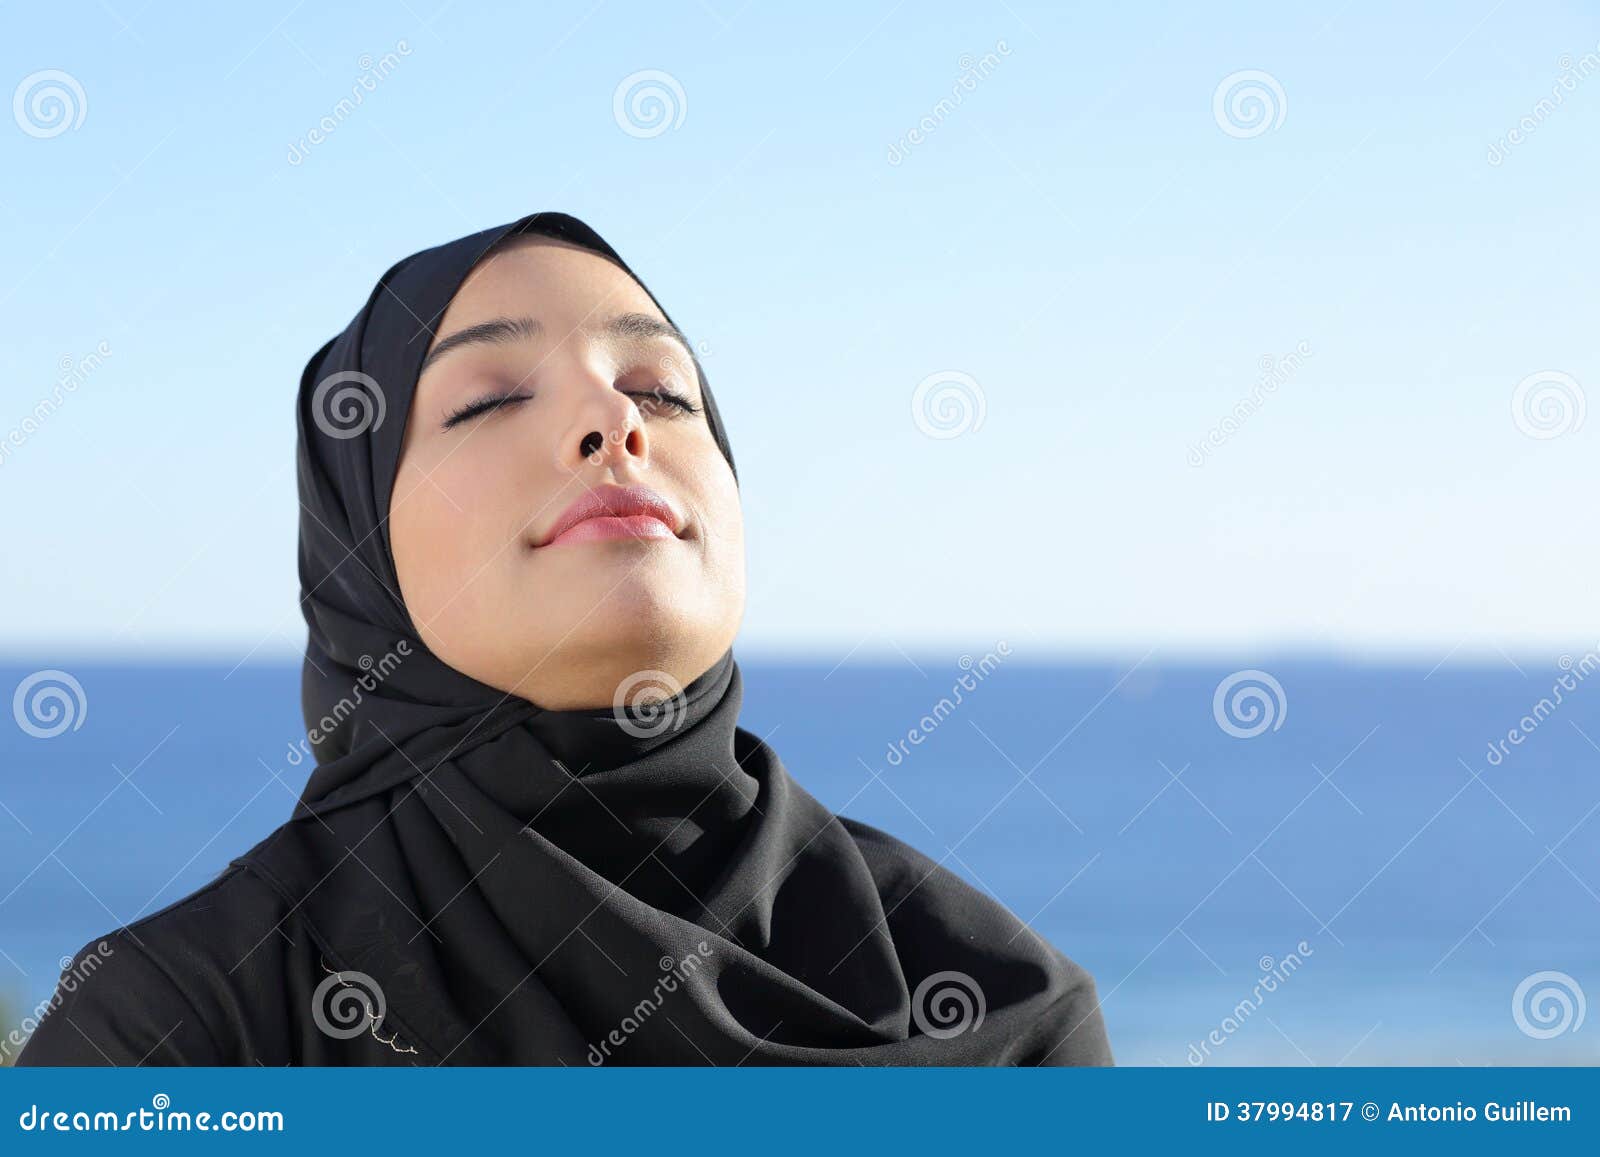 arab saudi woman breathing deep fresh air in the beach